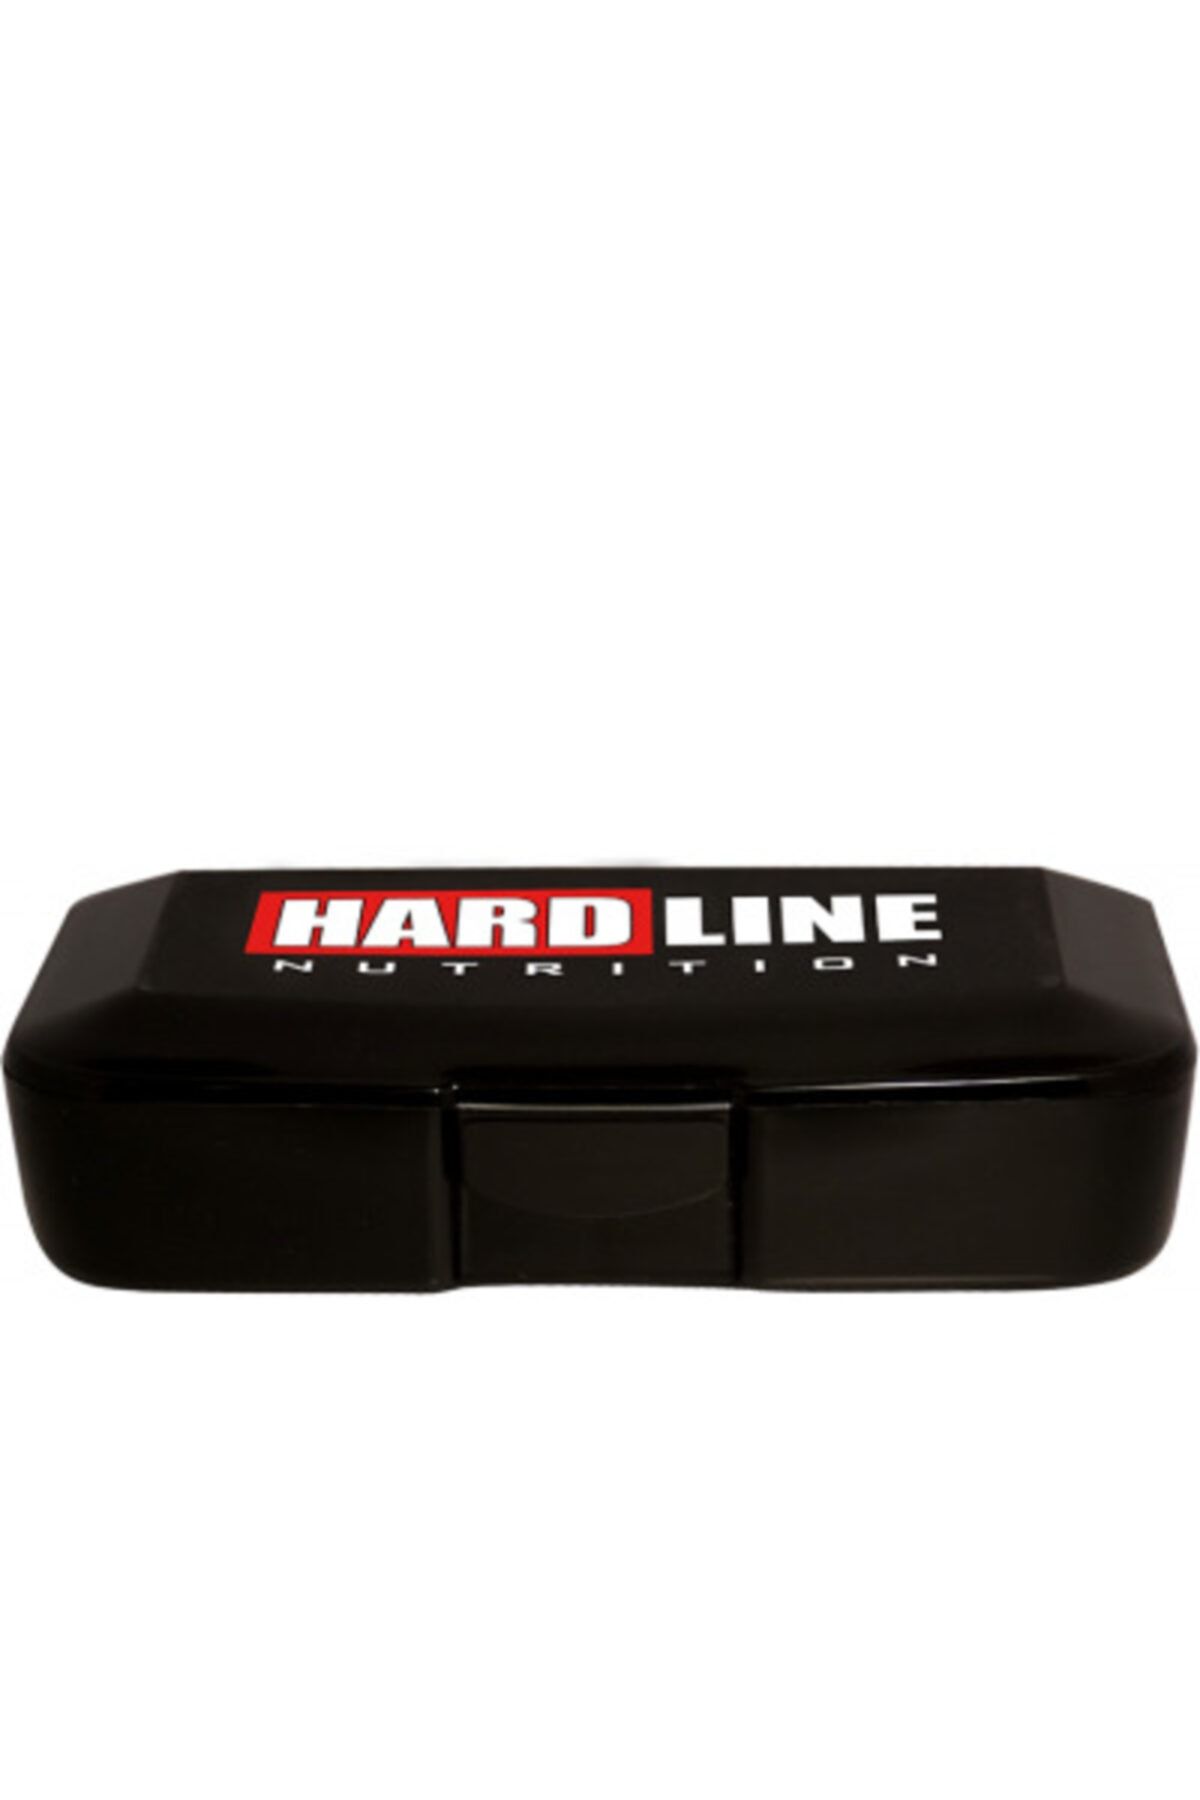 Hardline Pillbox Güvenlik Kiti